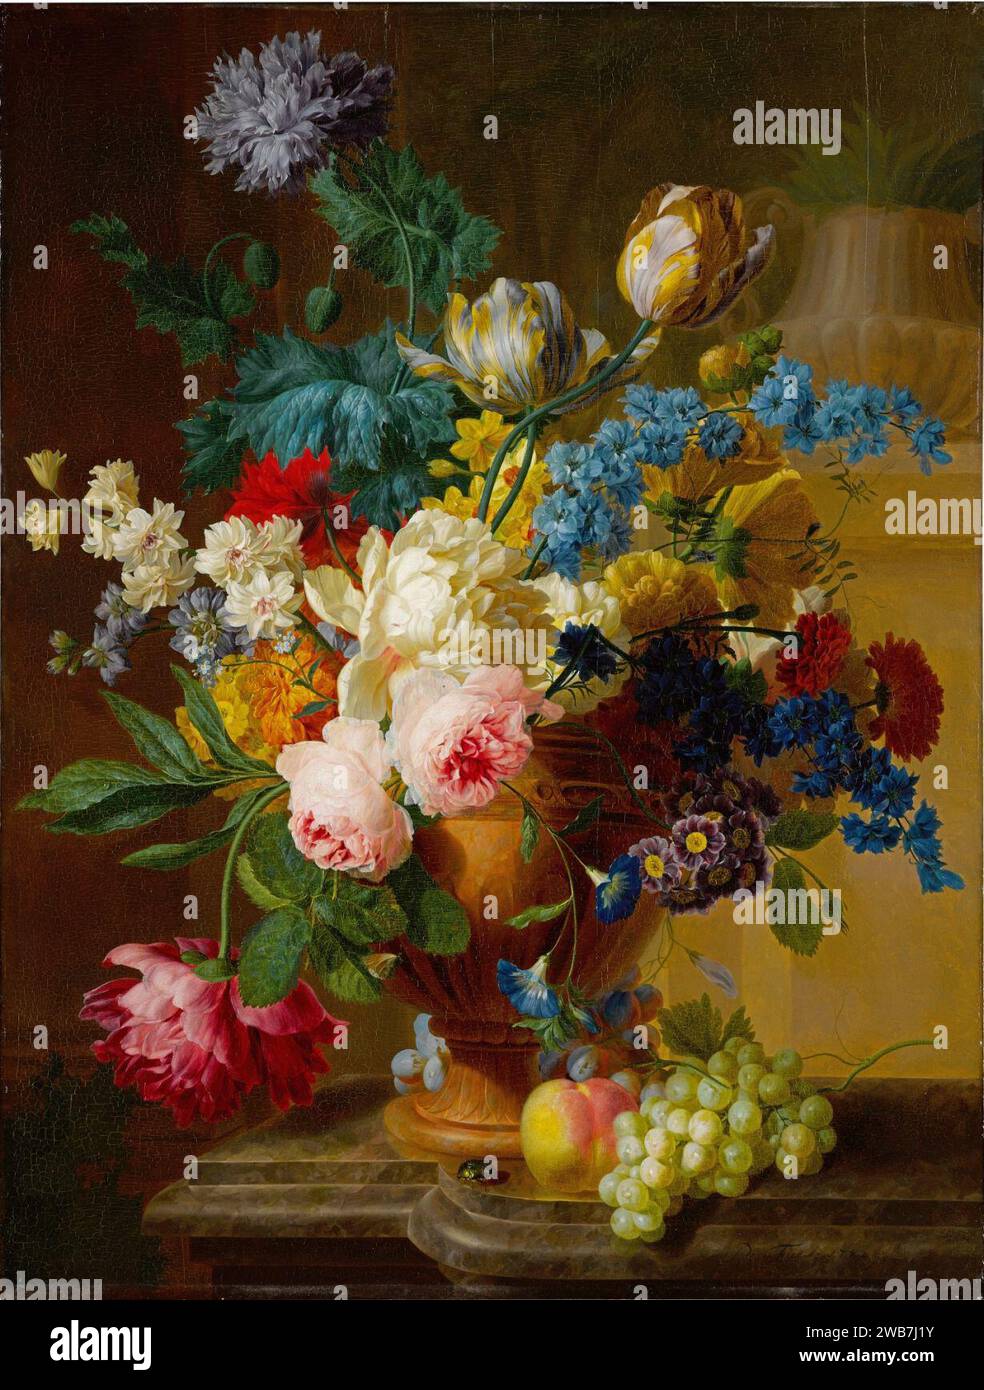 Pieter Faes - nature morte de roses, pivoines, tulipes, narcisses et autres fleurs dans un vase en terre cuite, avec des raisins et une pêche. Banque D'Images